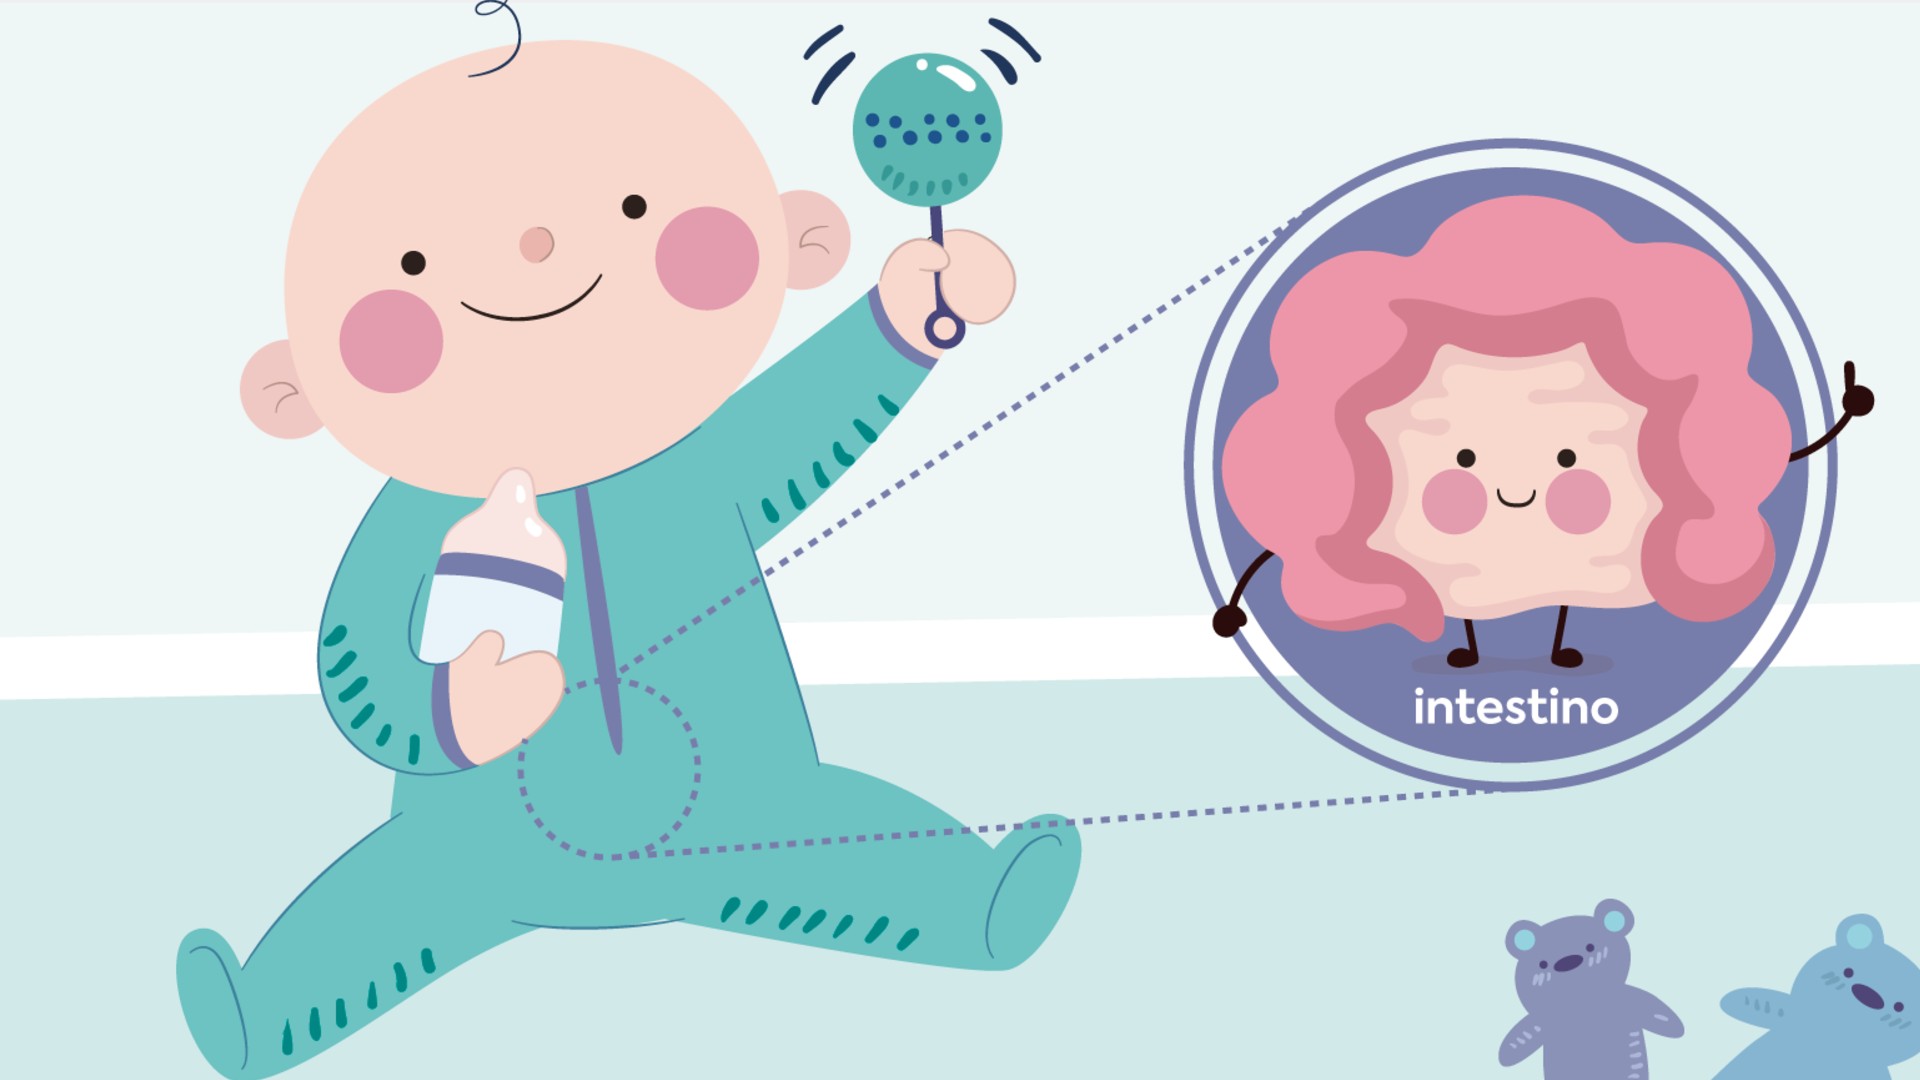 Foto de capa do artigo "Colidis (colikids): funciona para tratar a cólica do bebê?"